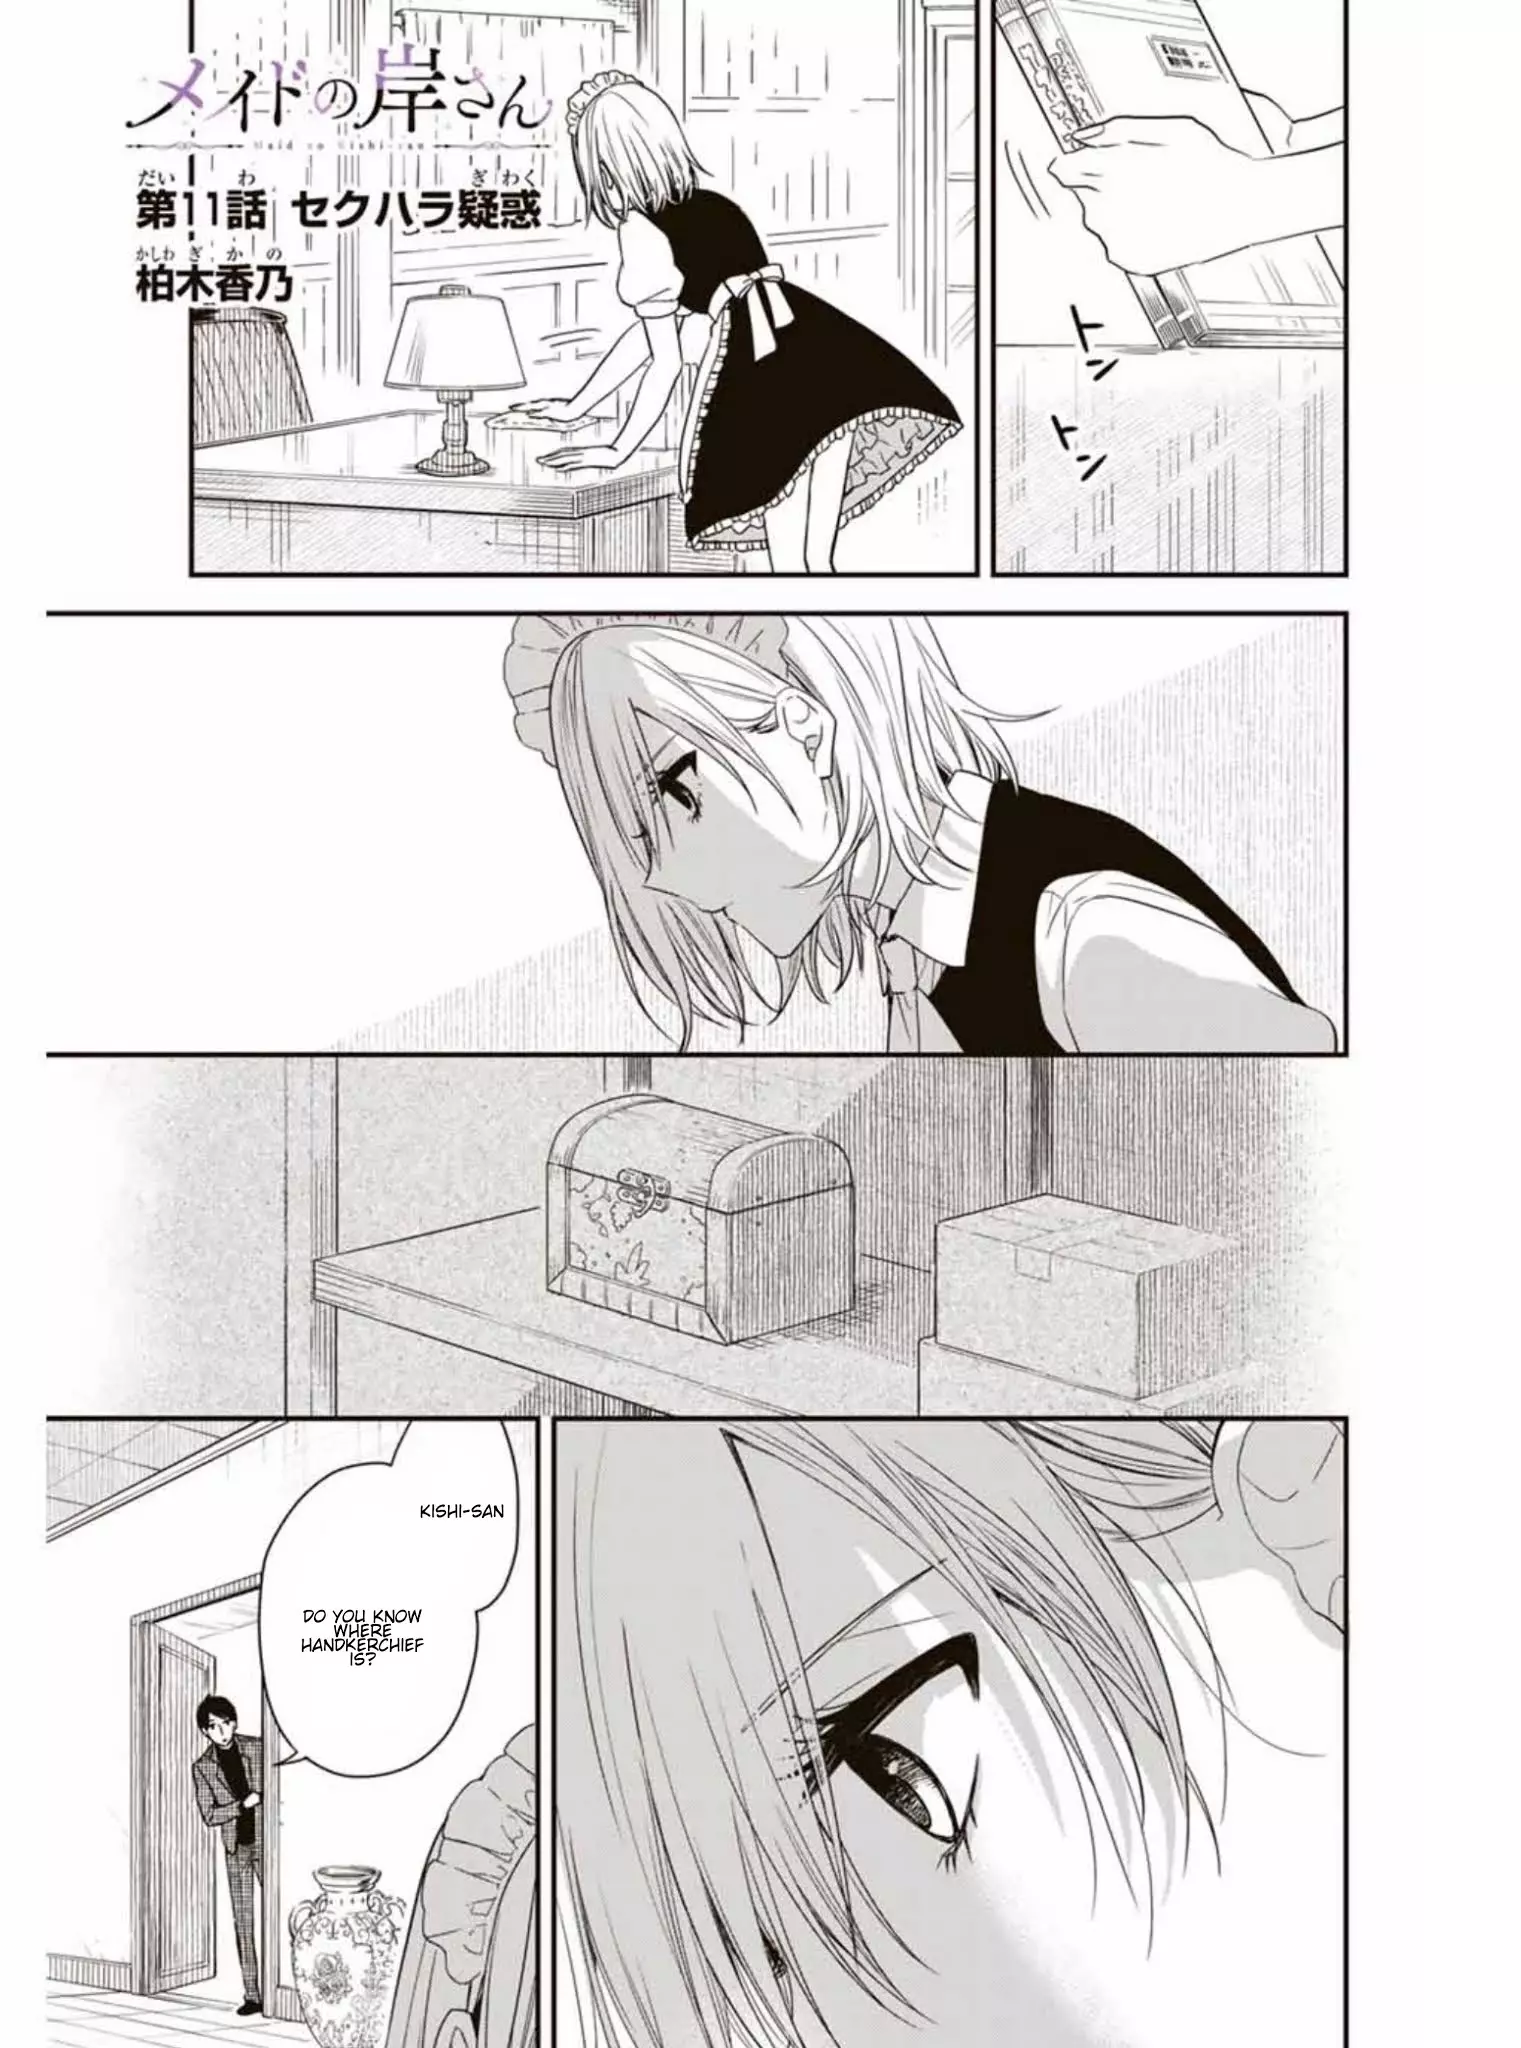 Maid No Kishi-San - 11 page 1